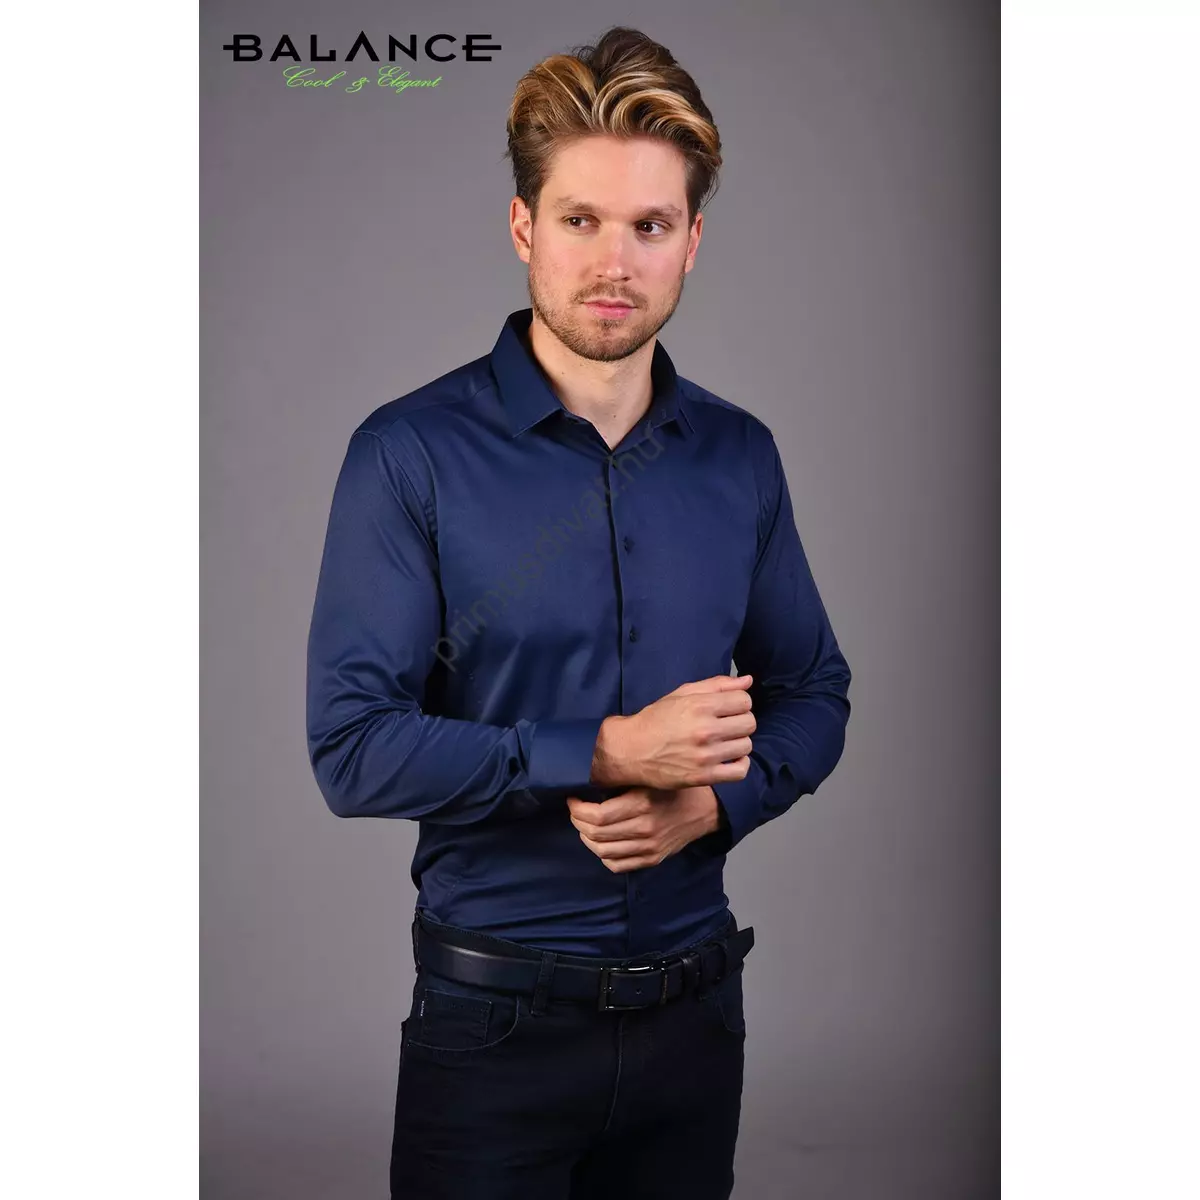 Balance normál galléros, sötétkék rugalmas pamutszatén, slim-fit hosszú ujjú alkalmi ing